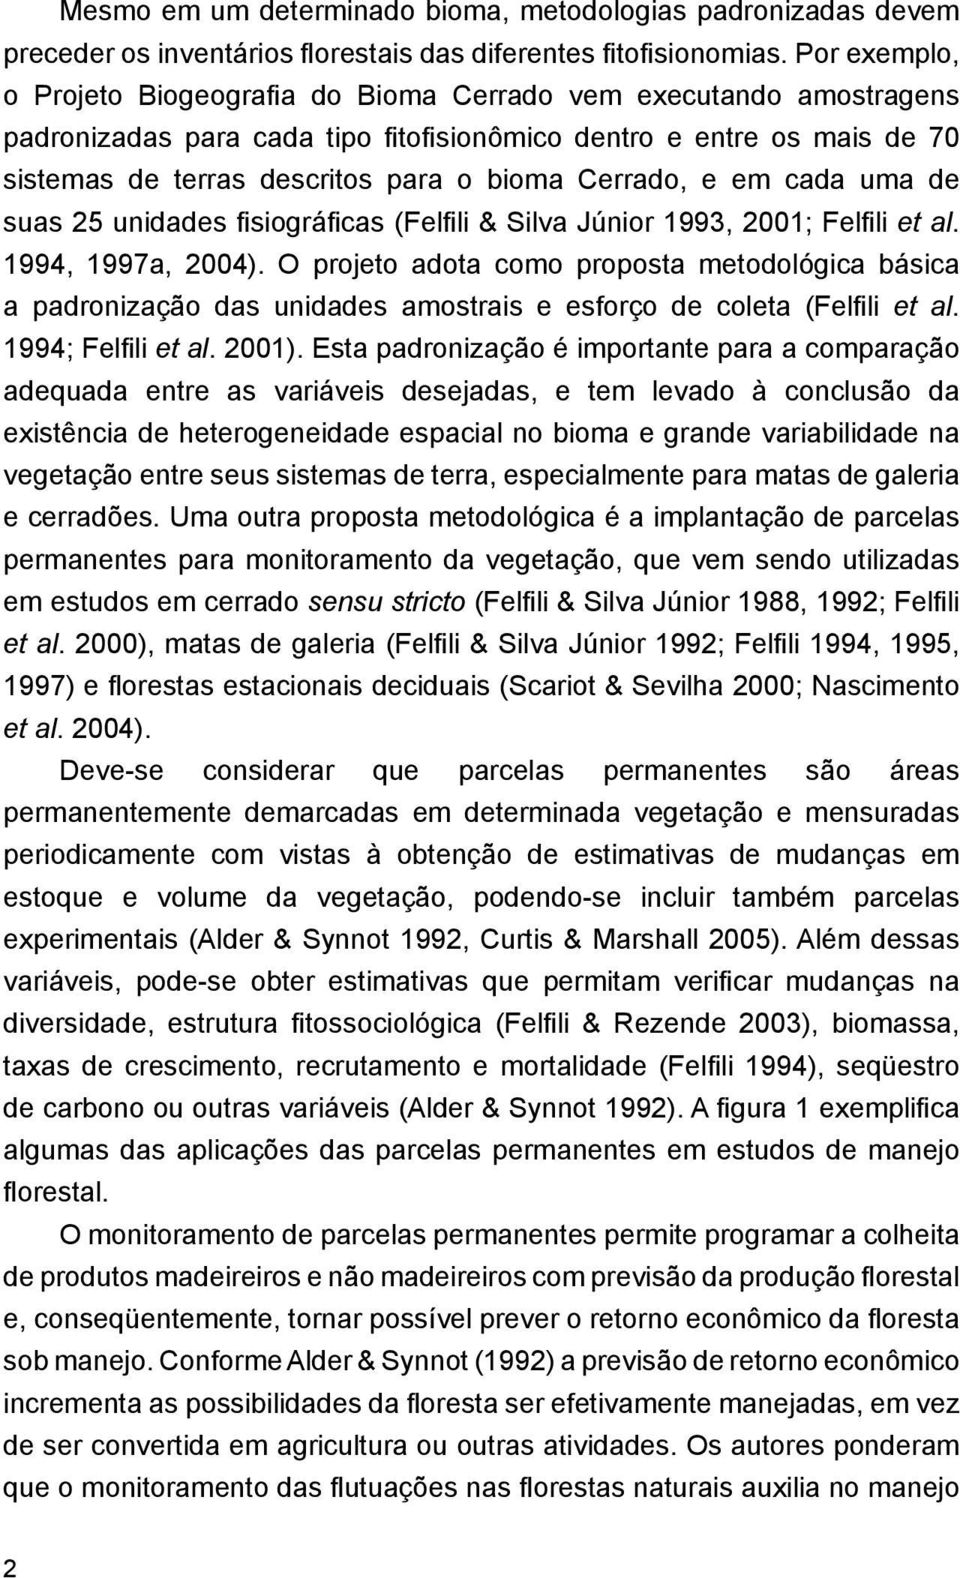 Cerrado, e em cada uma de suas 25 unidades fisiográficas (Felfili & Silva Júnior 1993, 2001; Felfili et al. 1994, 1997a, 2004).